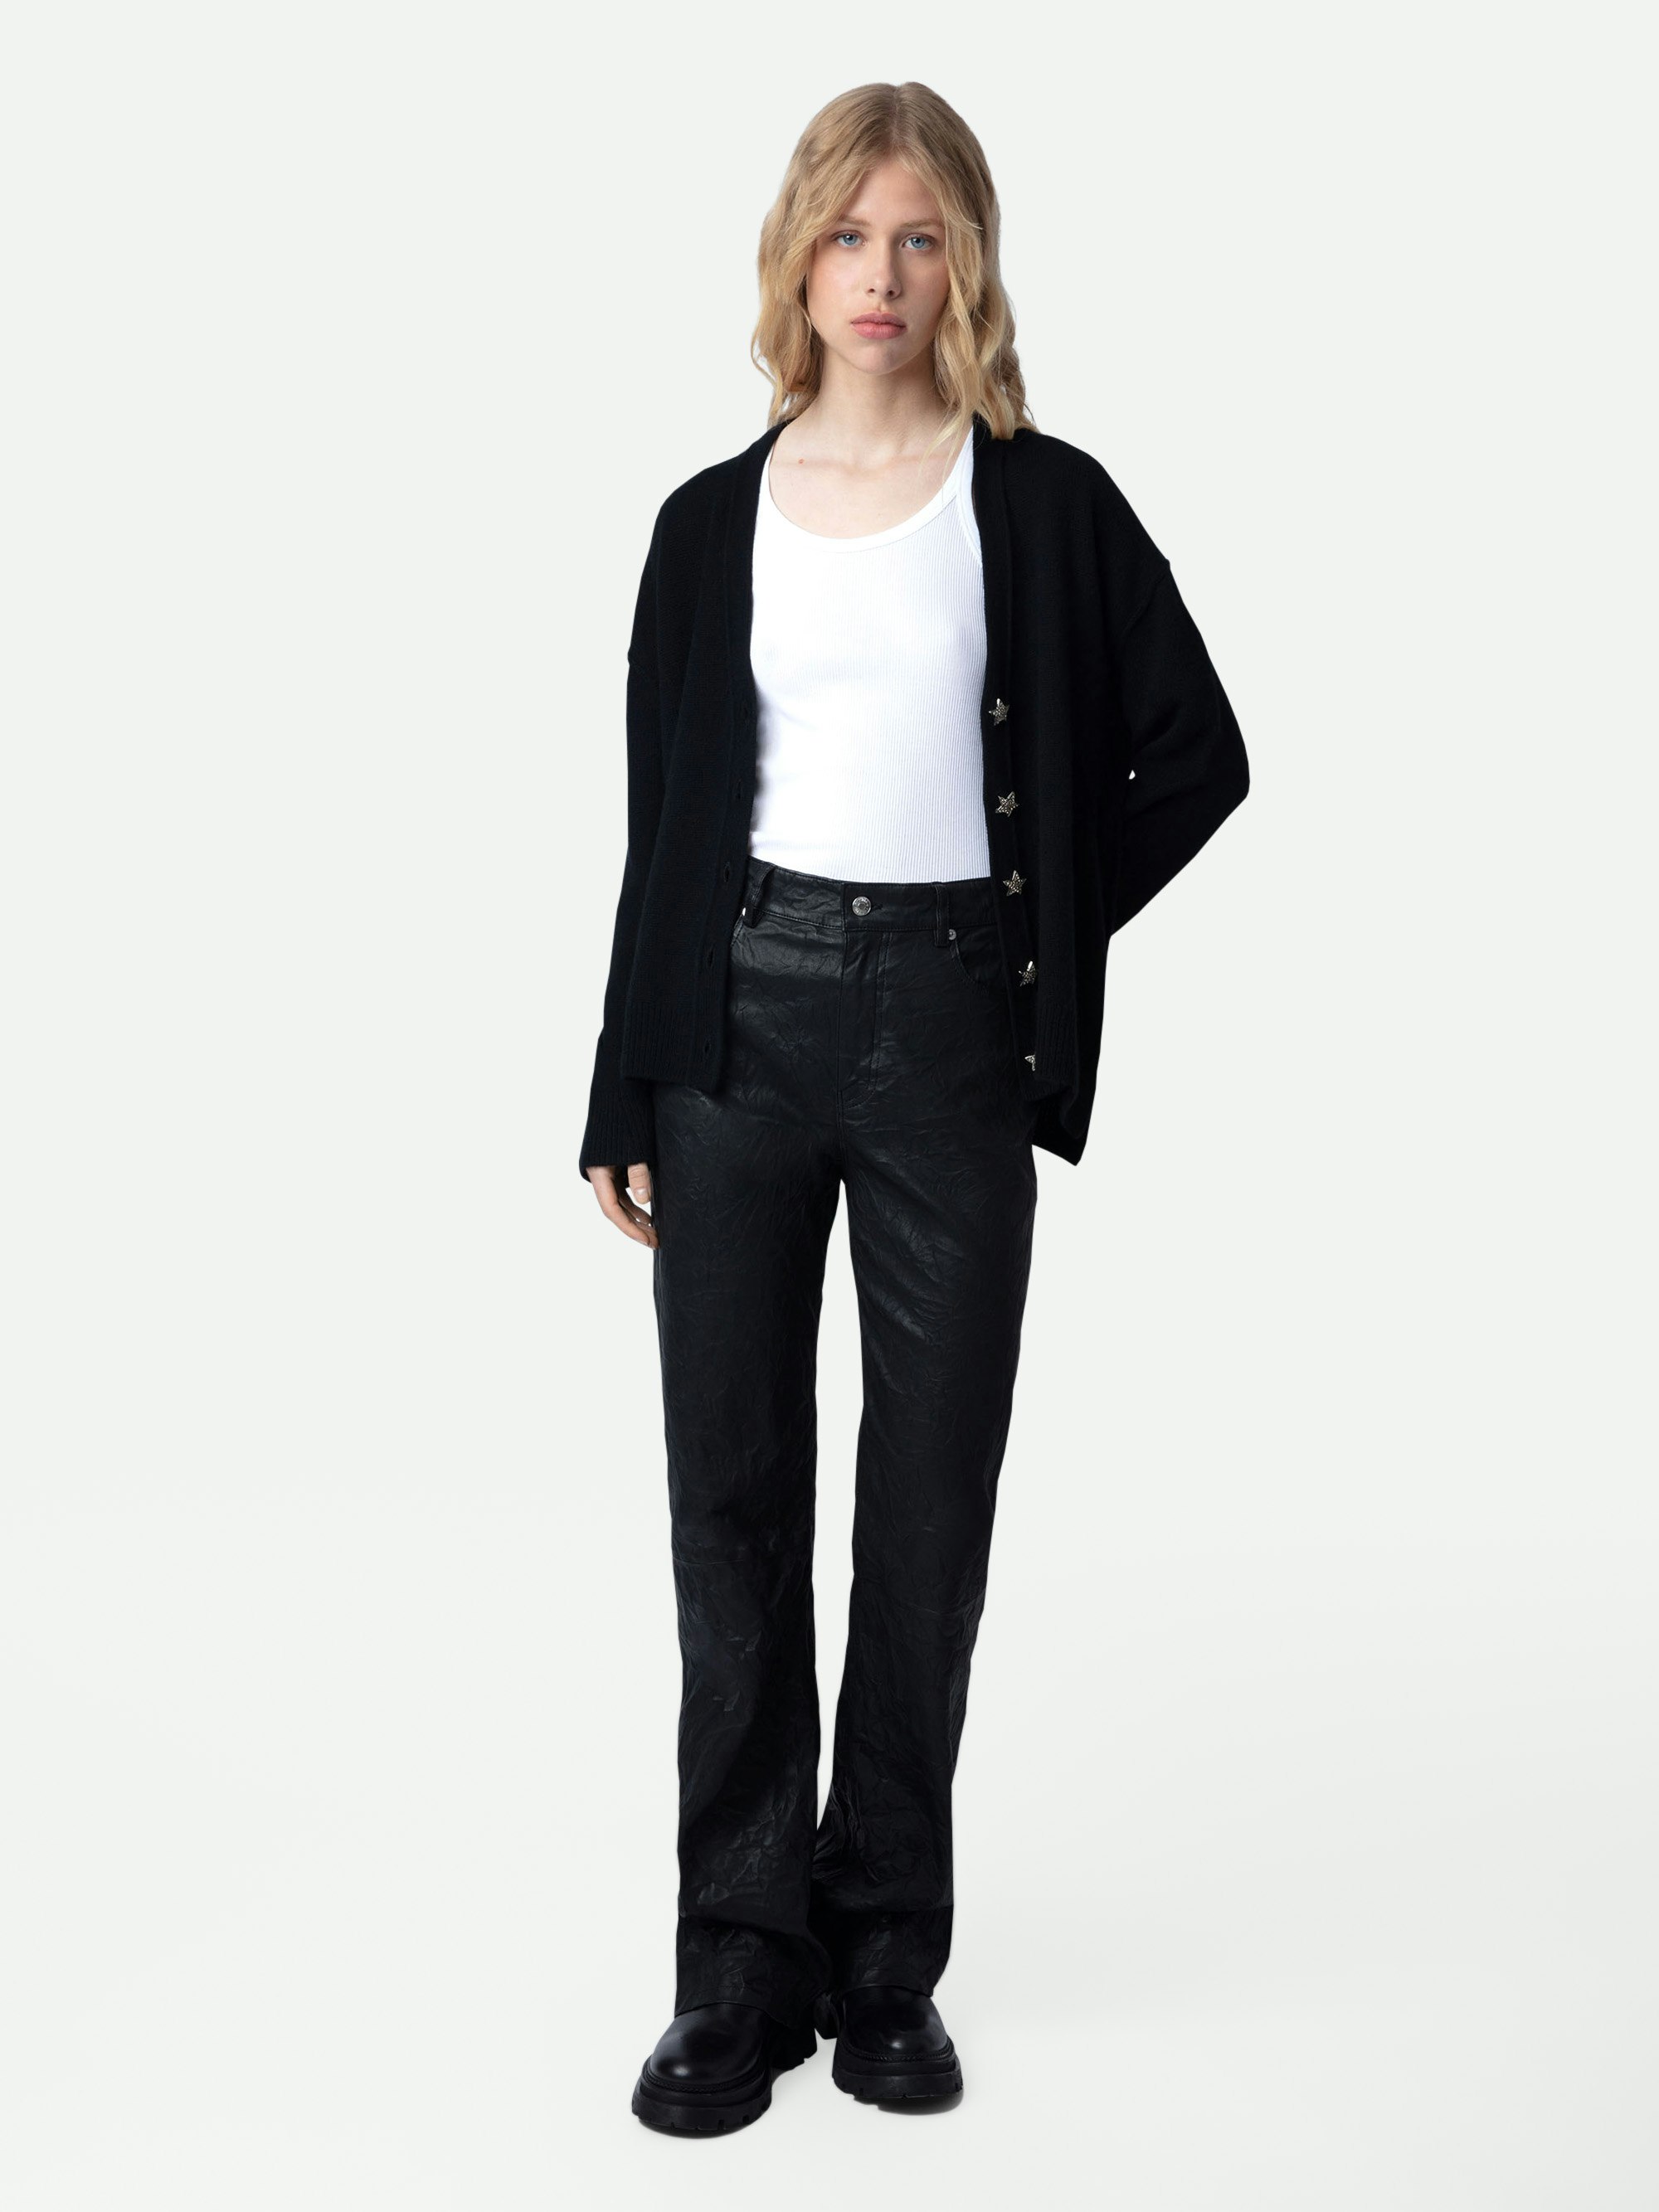 Mirka Jewelled  Cardigan 100% Cashmere - Women's black 100% cashmere cardigan with star-shaped jewelled buttons.